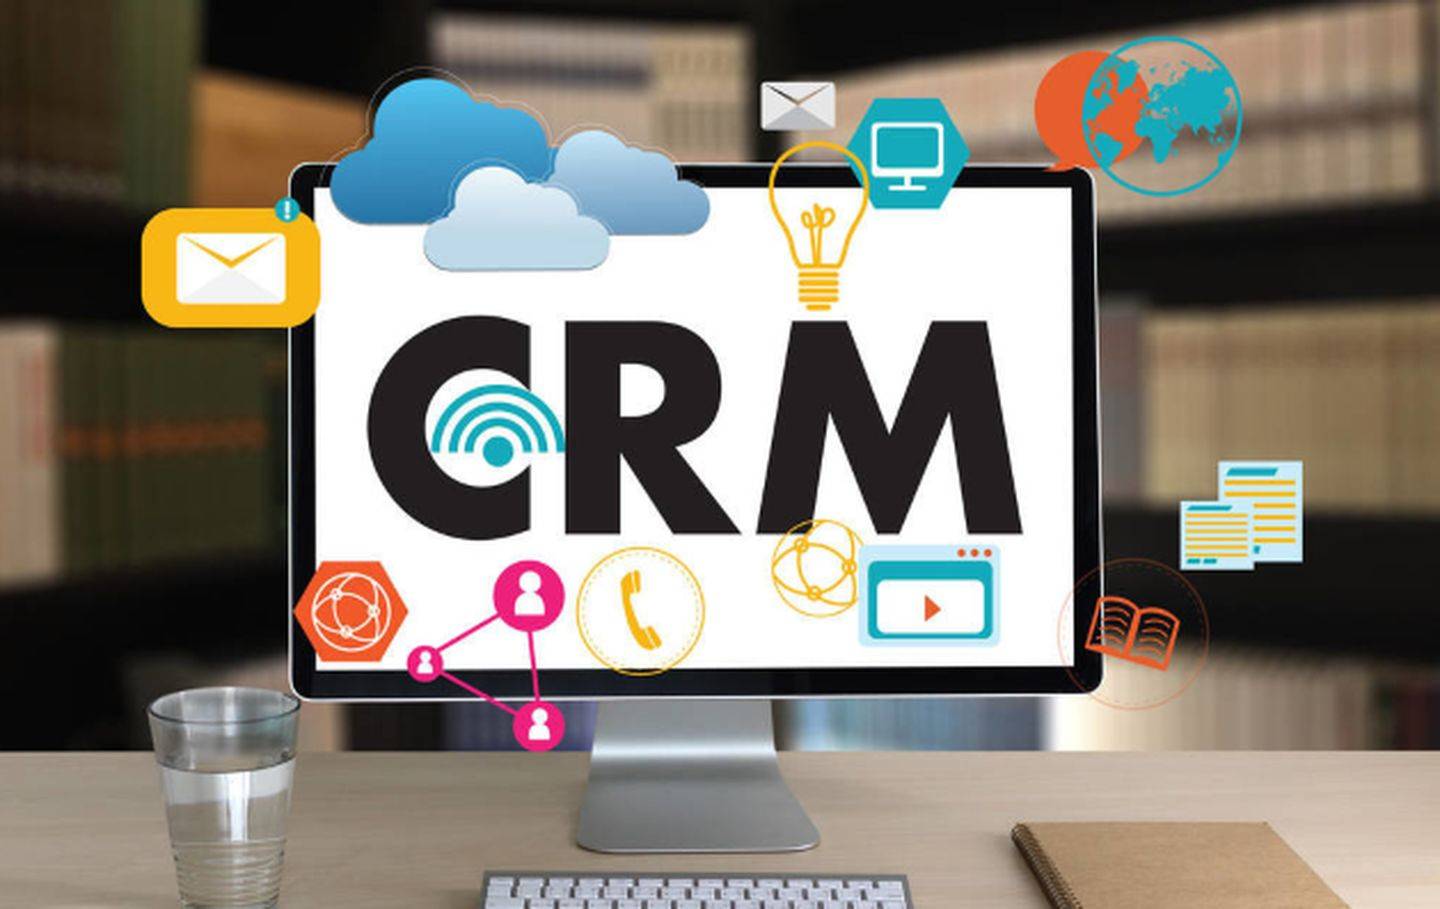 crm客戶關系管理系統的優勢有哪些？